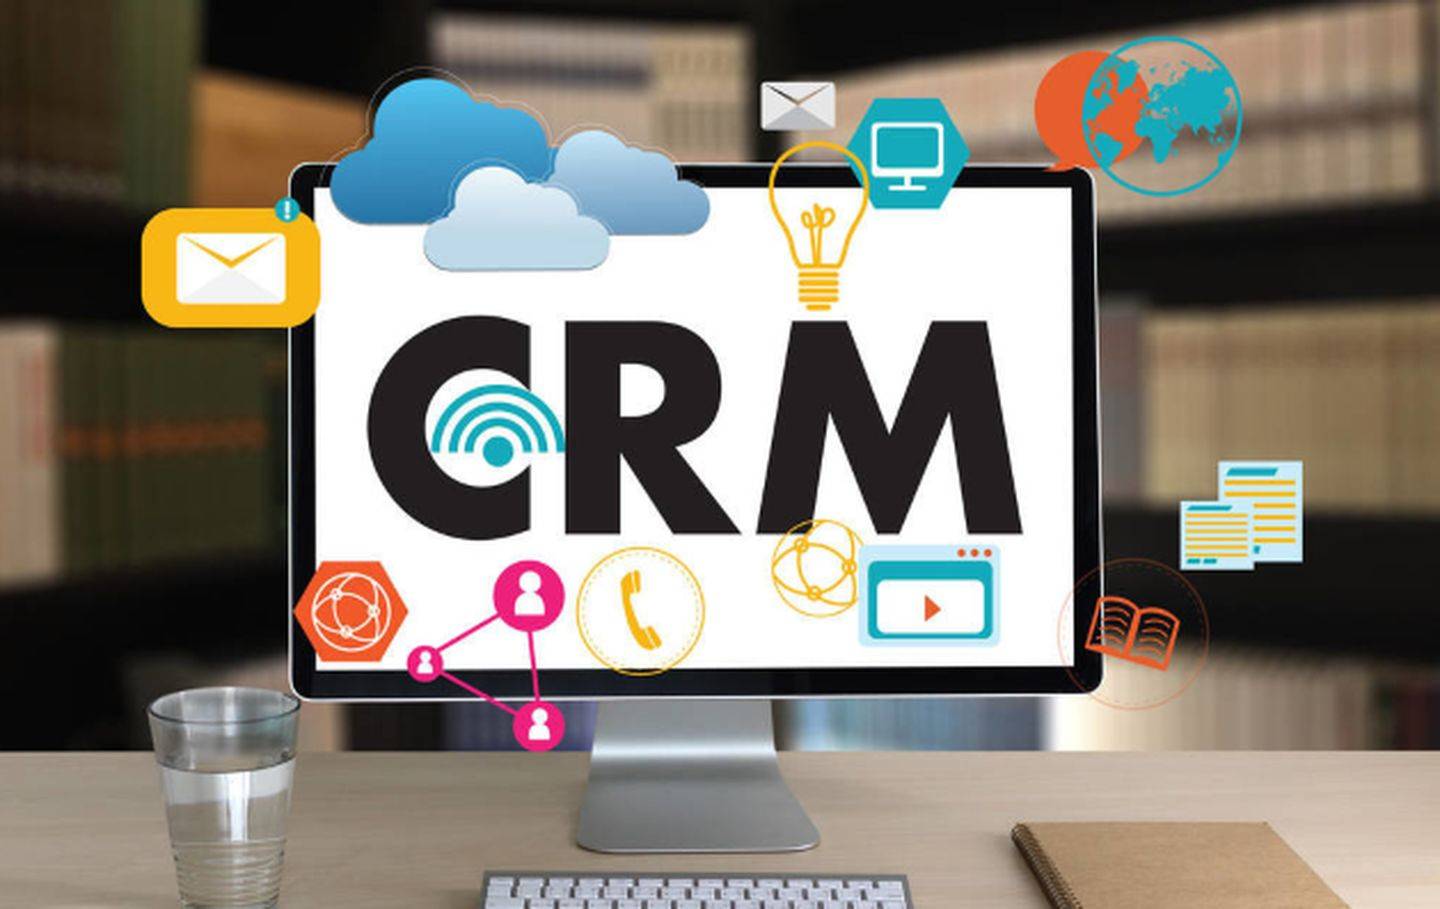 crm客戶關系管理系統的優勢有哪些？